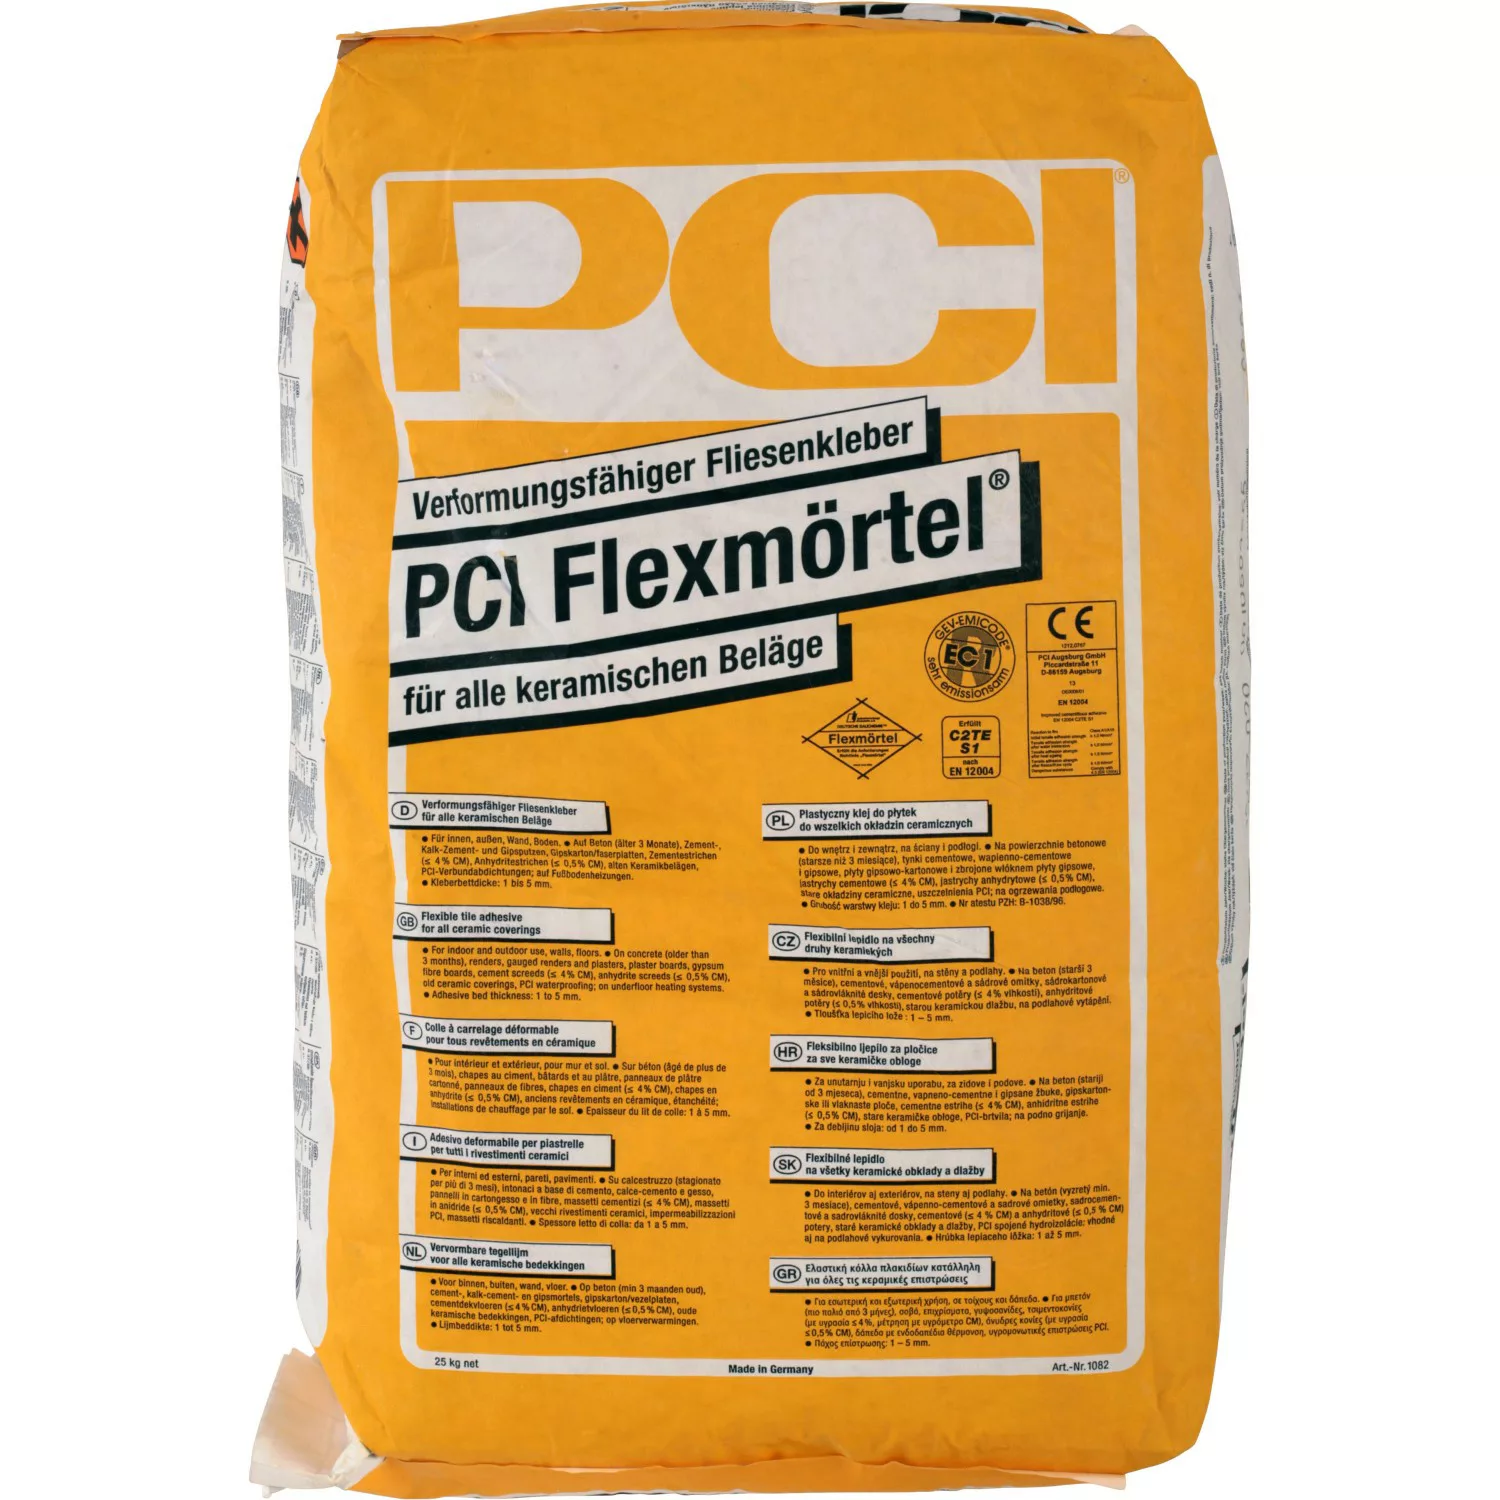 PCI Flexmörtel Fliesenkleber 5 kg günstig online kaufen